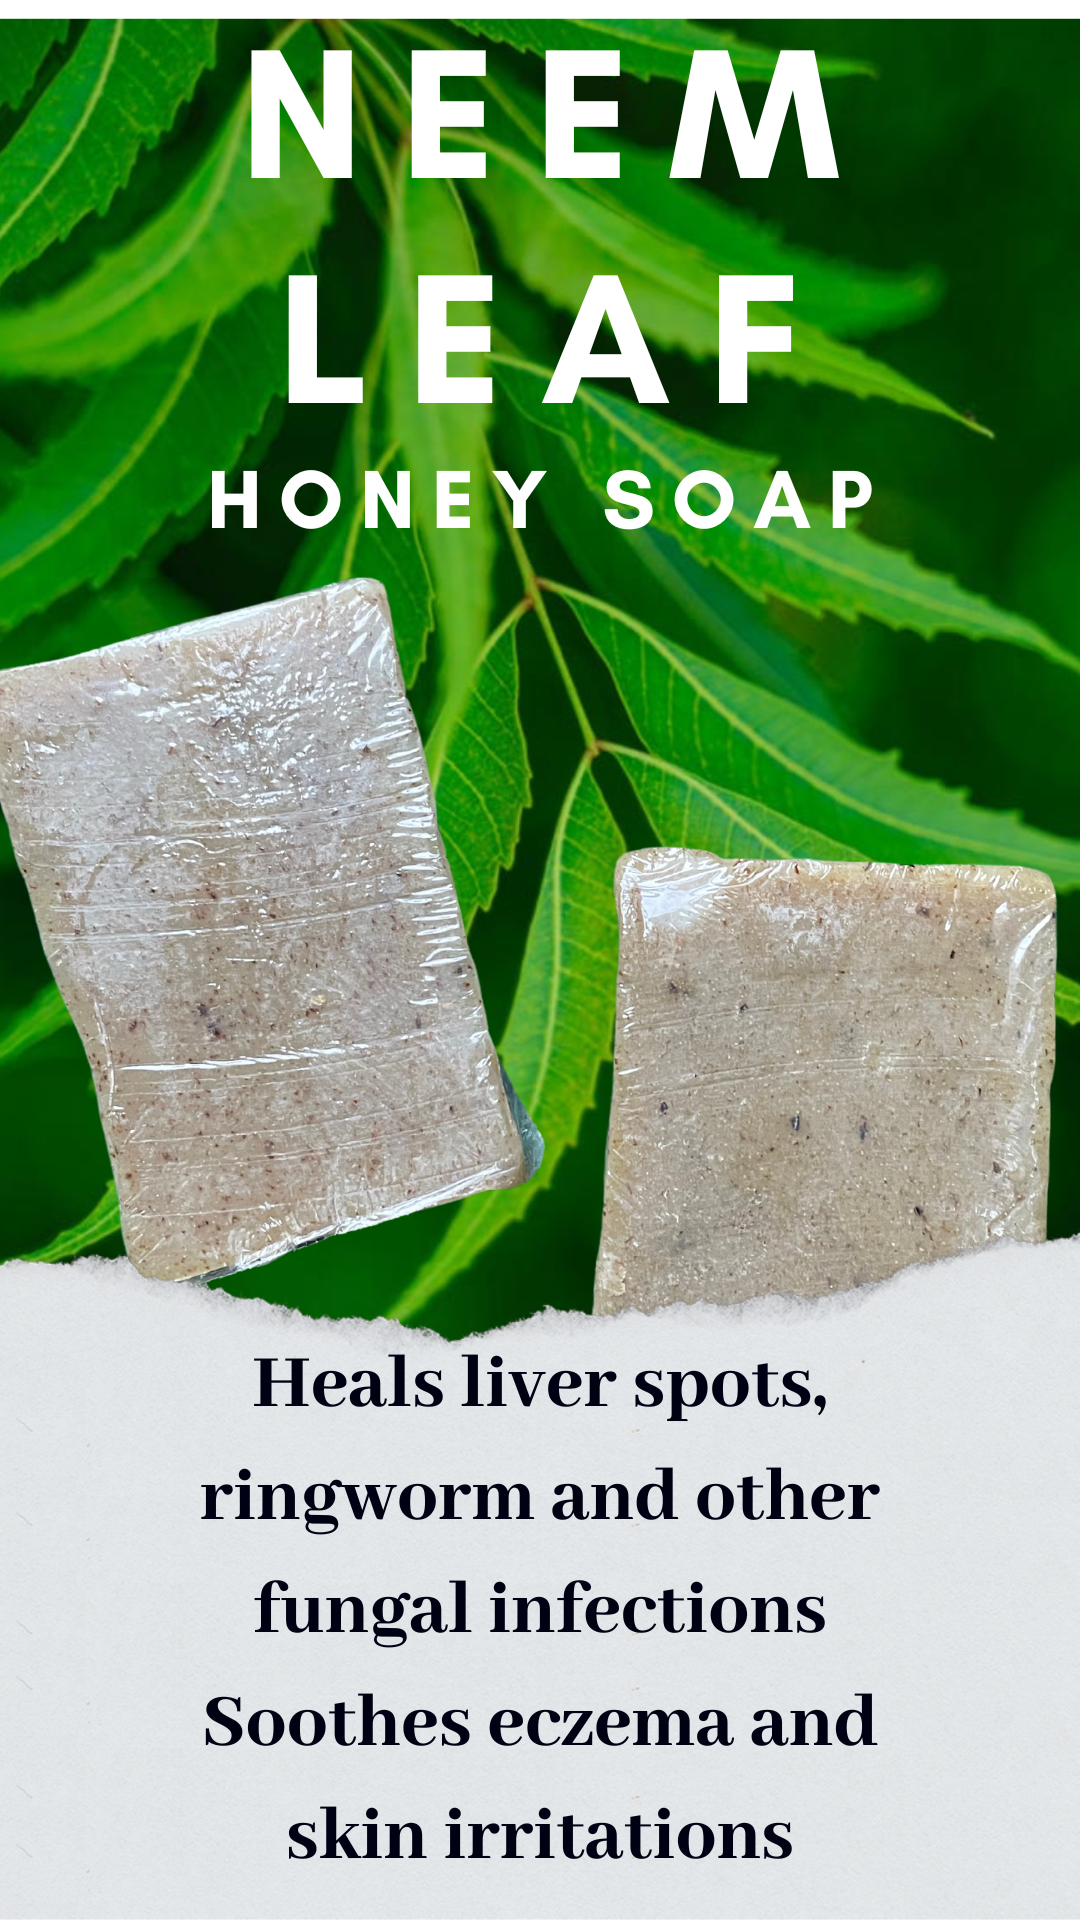 Honey Neem Oil Soap